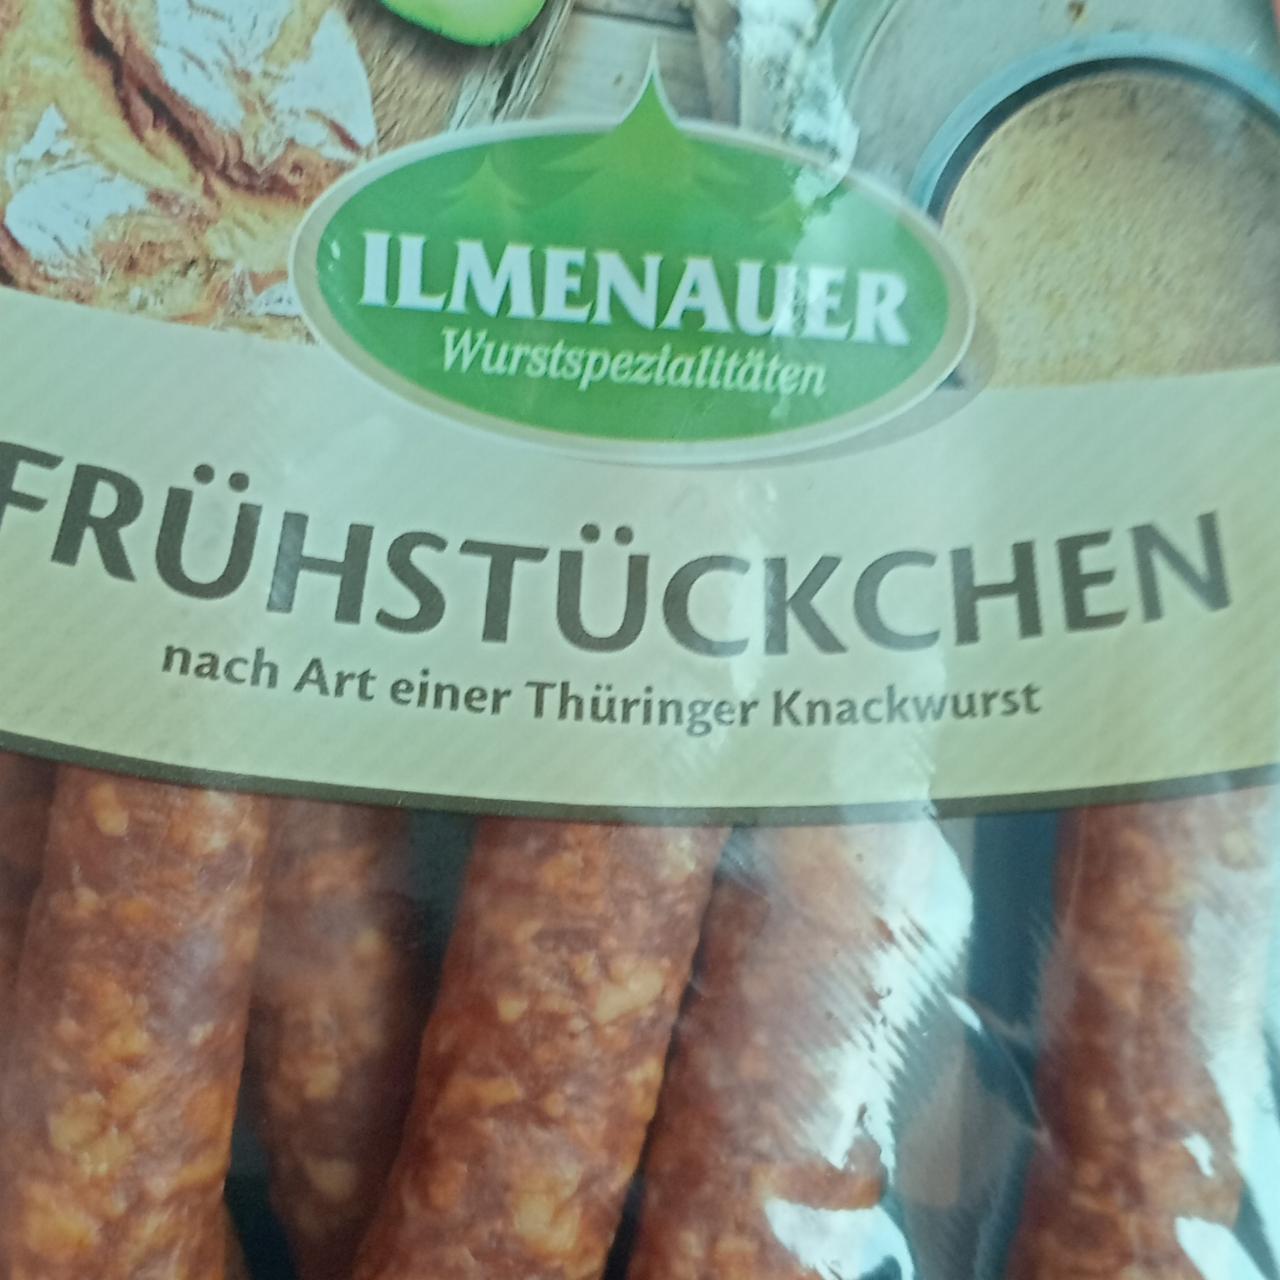 Zdjęcia - Frühstückchen Ilmenauer